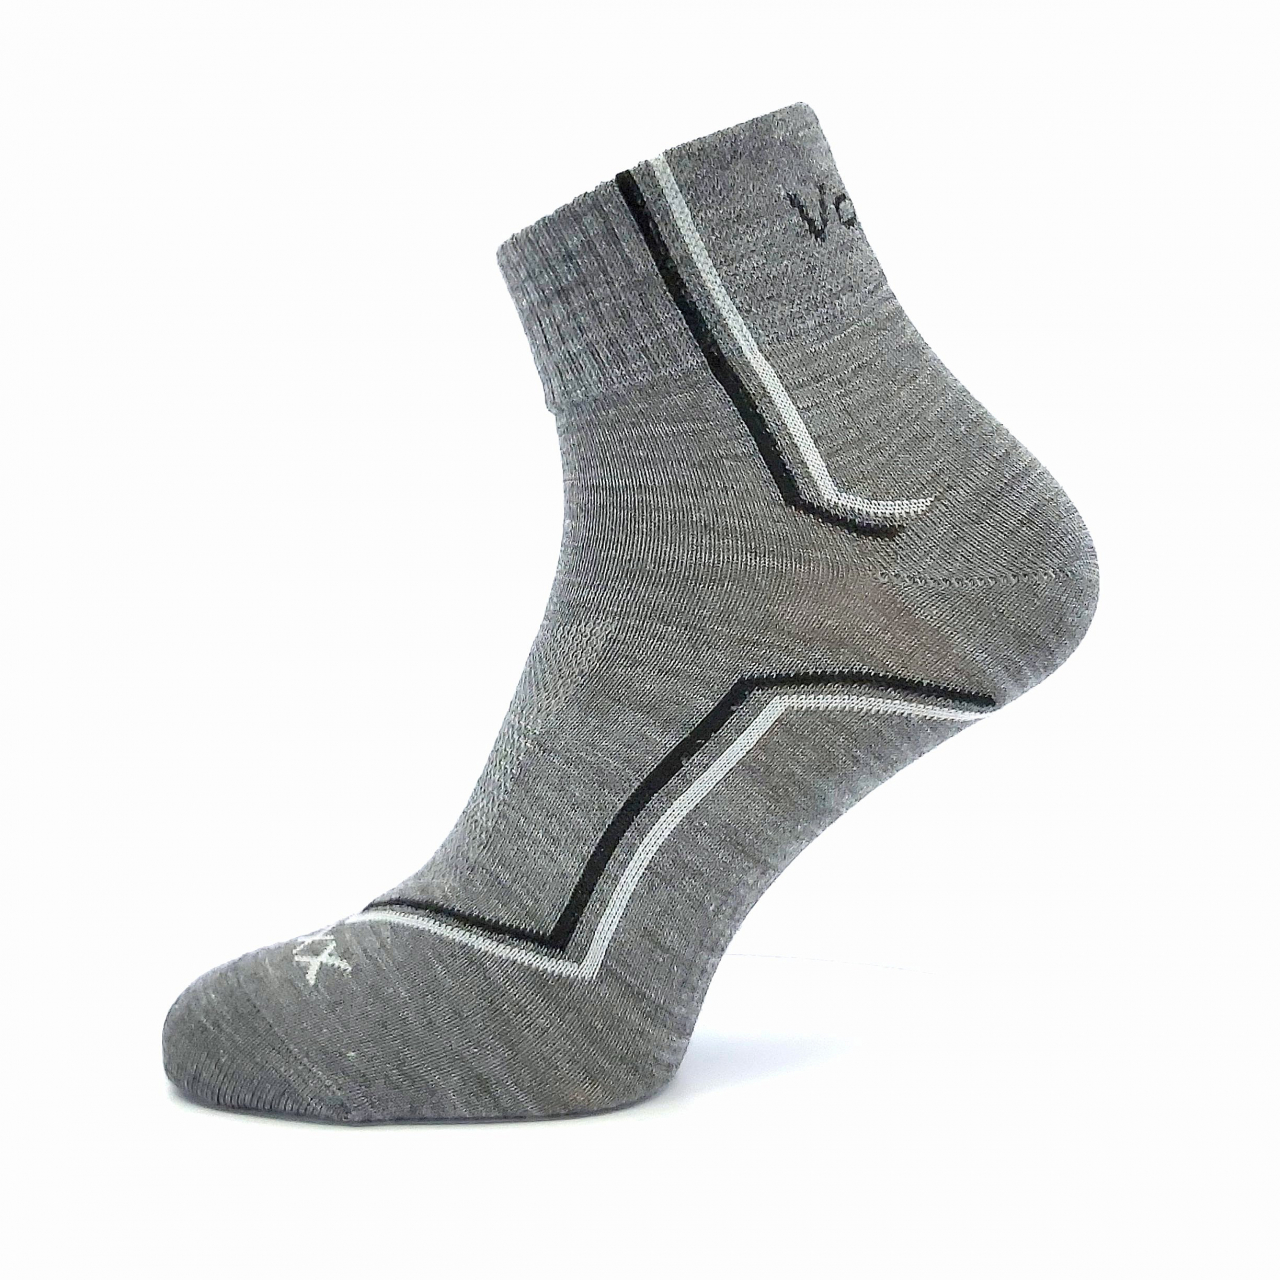 Ponožky sportovní Voxx Kroton silproX - světle šedé, 35-38